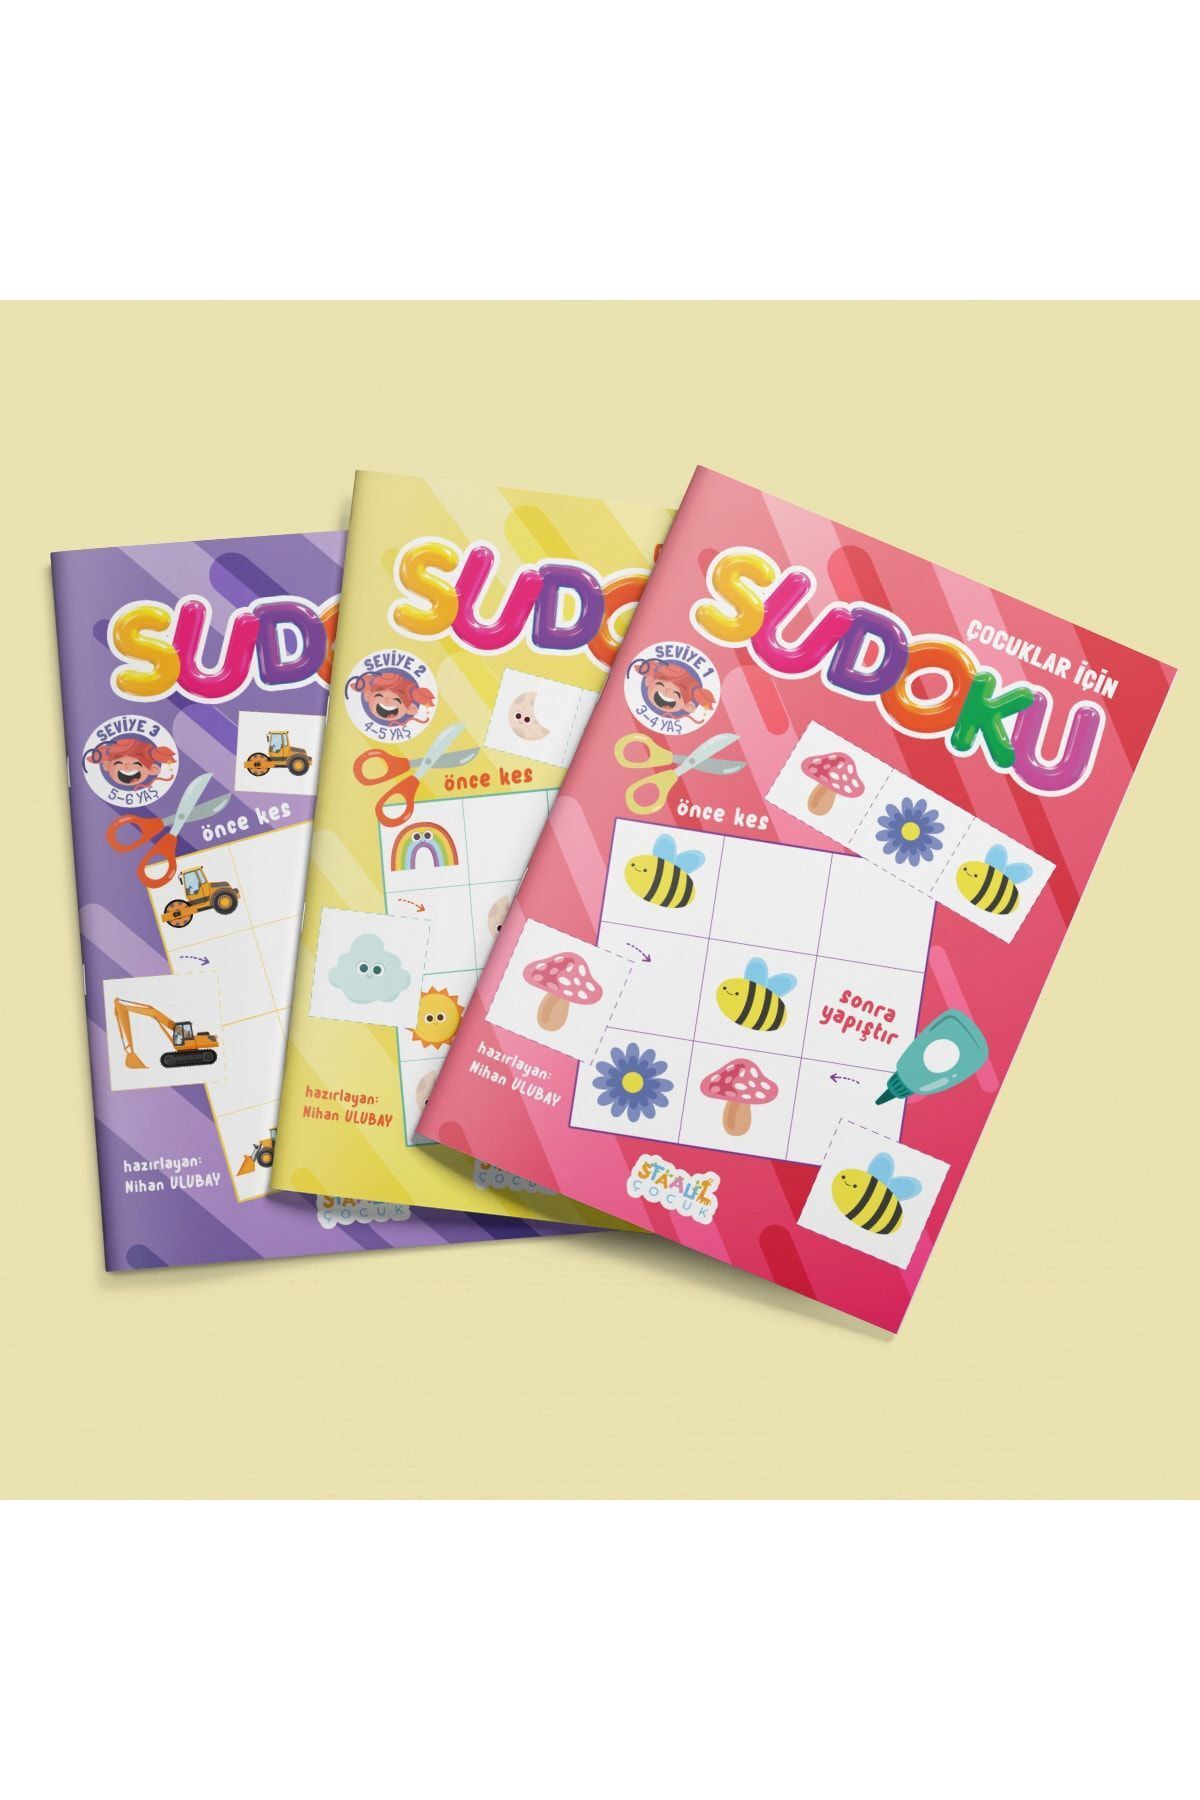 STAAU Çocuk Çocuklar Için Sudoku 3'lü Set - Seviye 1-2-3 (3 Kitap)